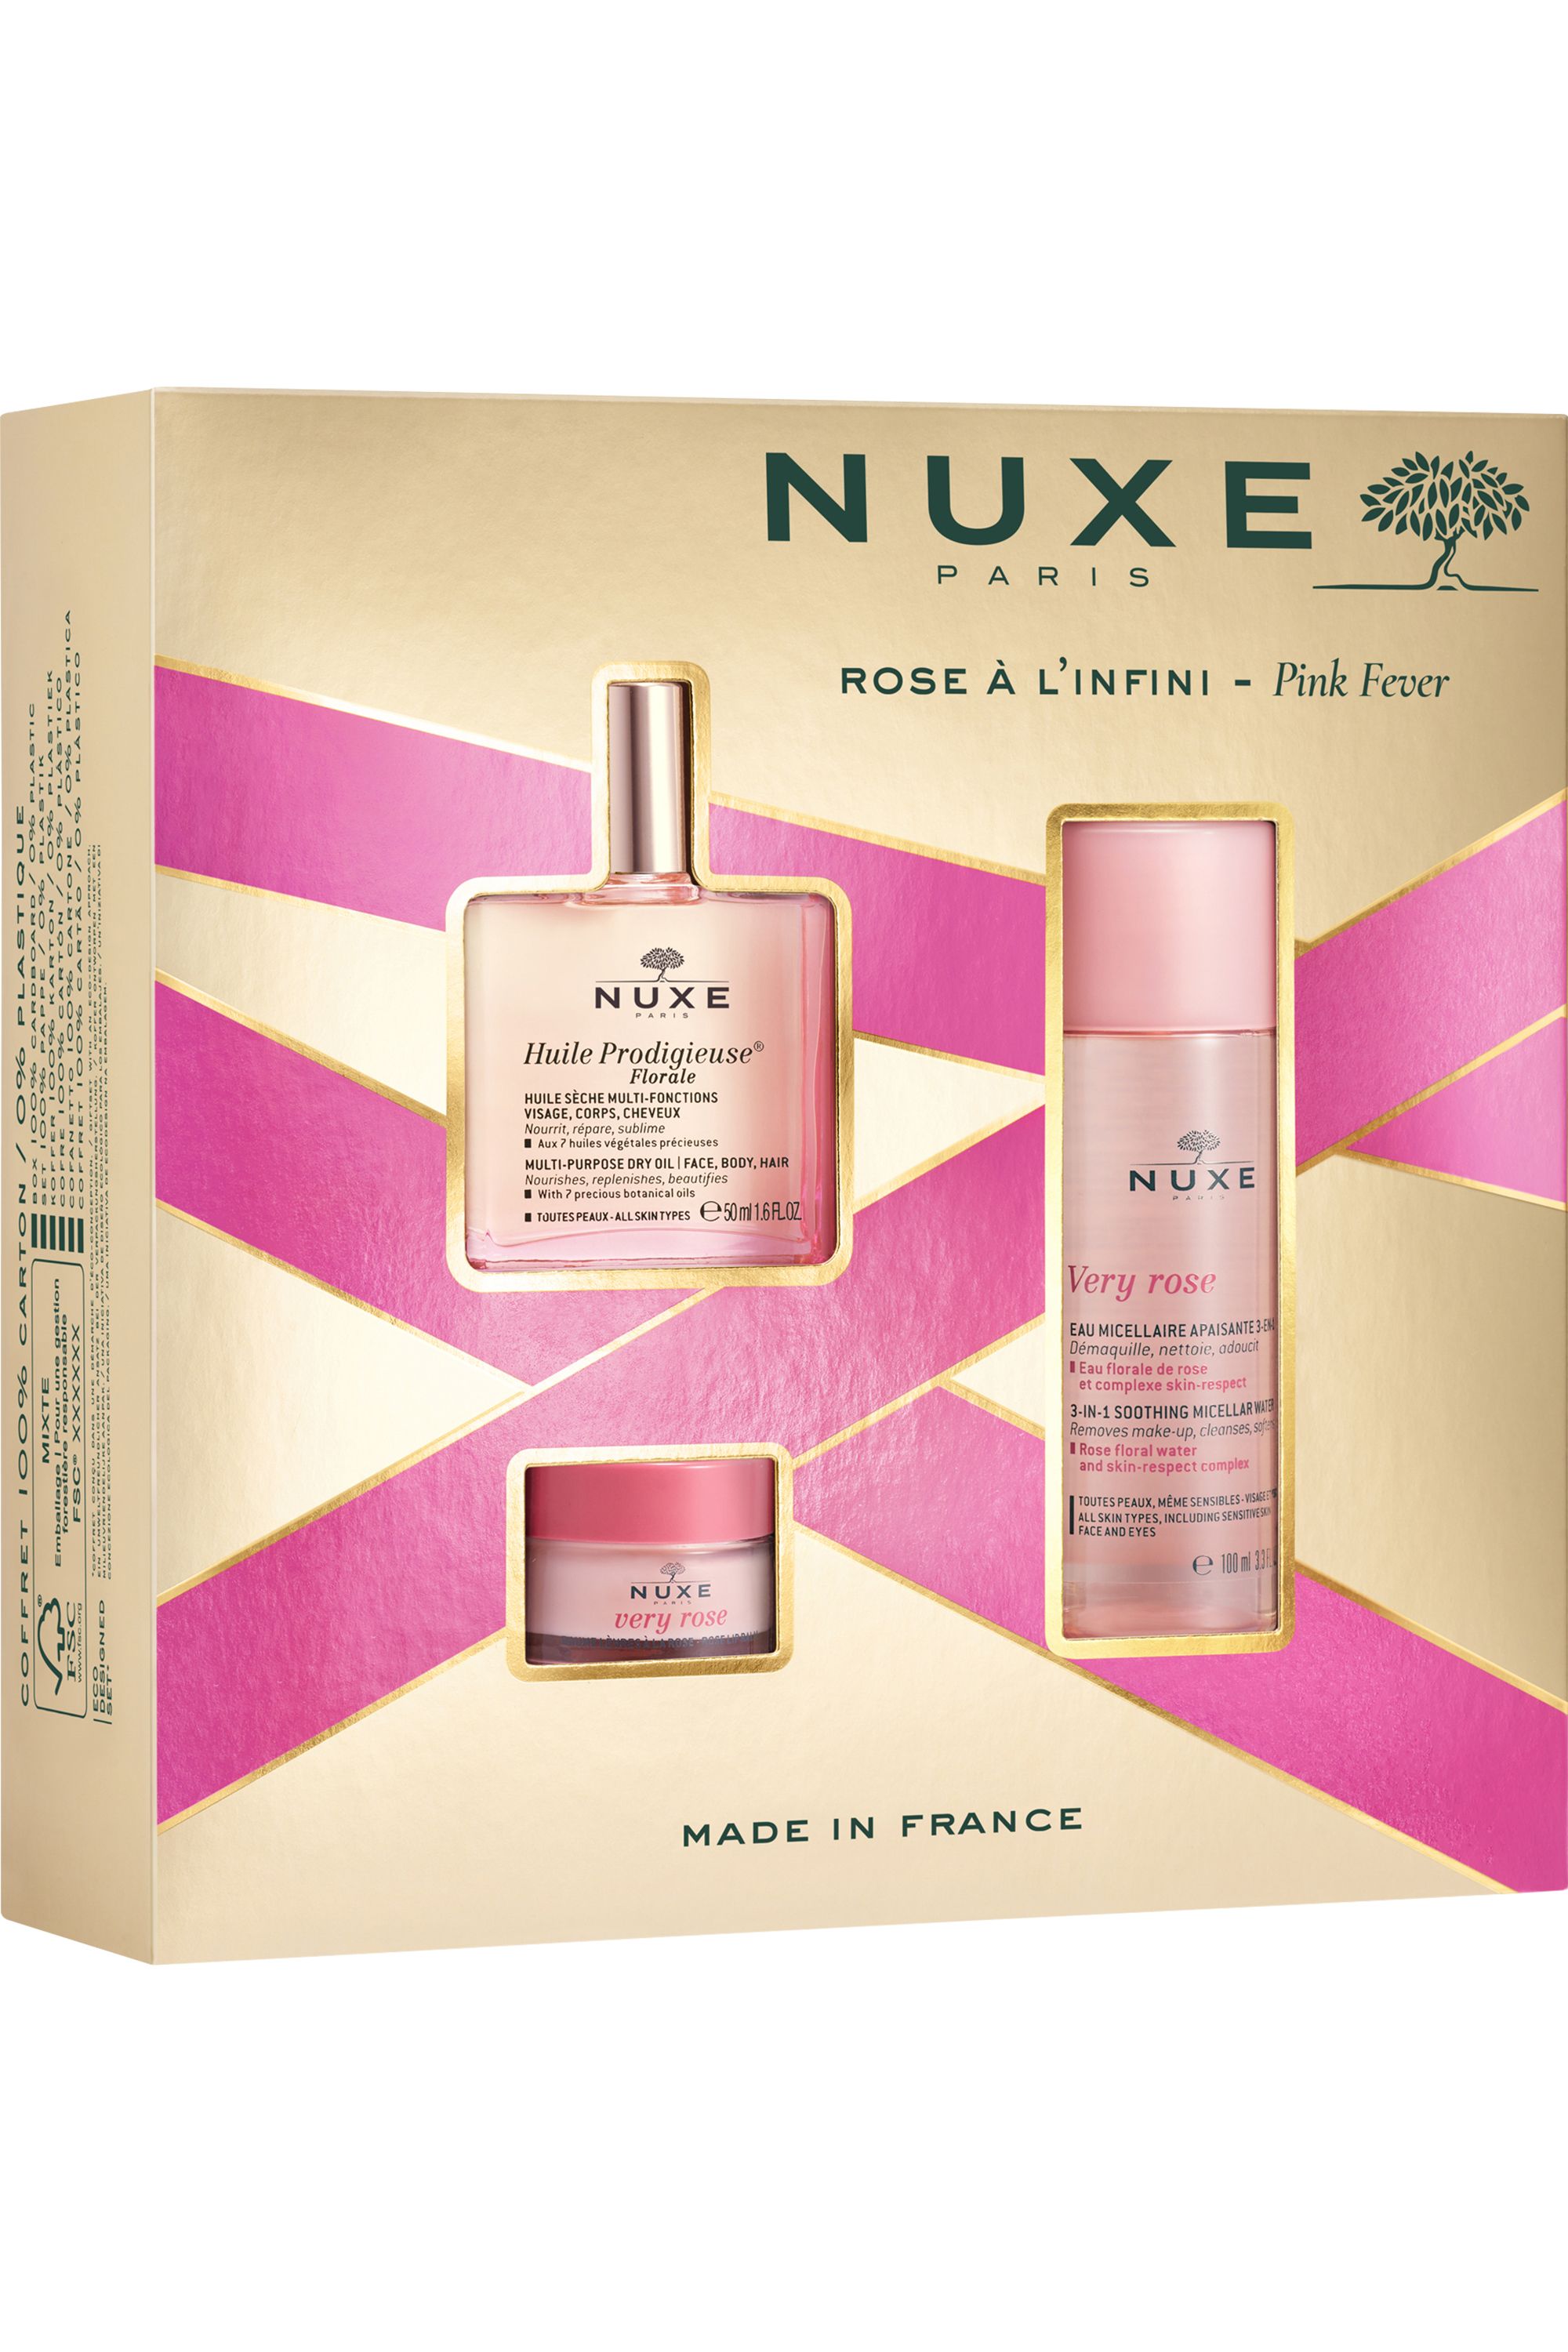 Nuxe - Coffret soin visage Rose à l'infini avec l'Huile Prodigieuse®  Florale 50ml - Blissim